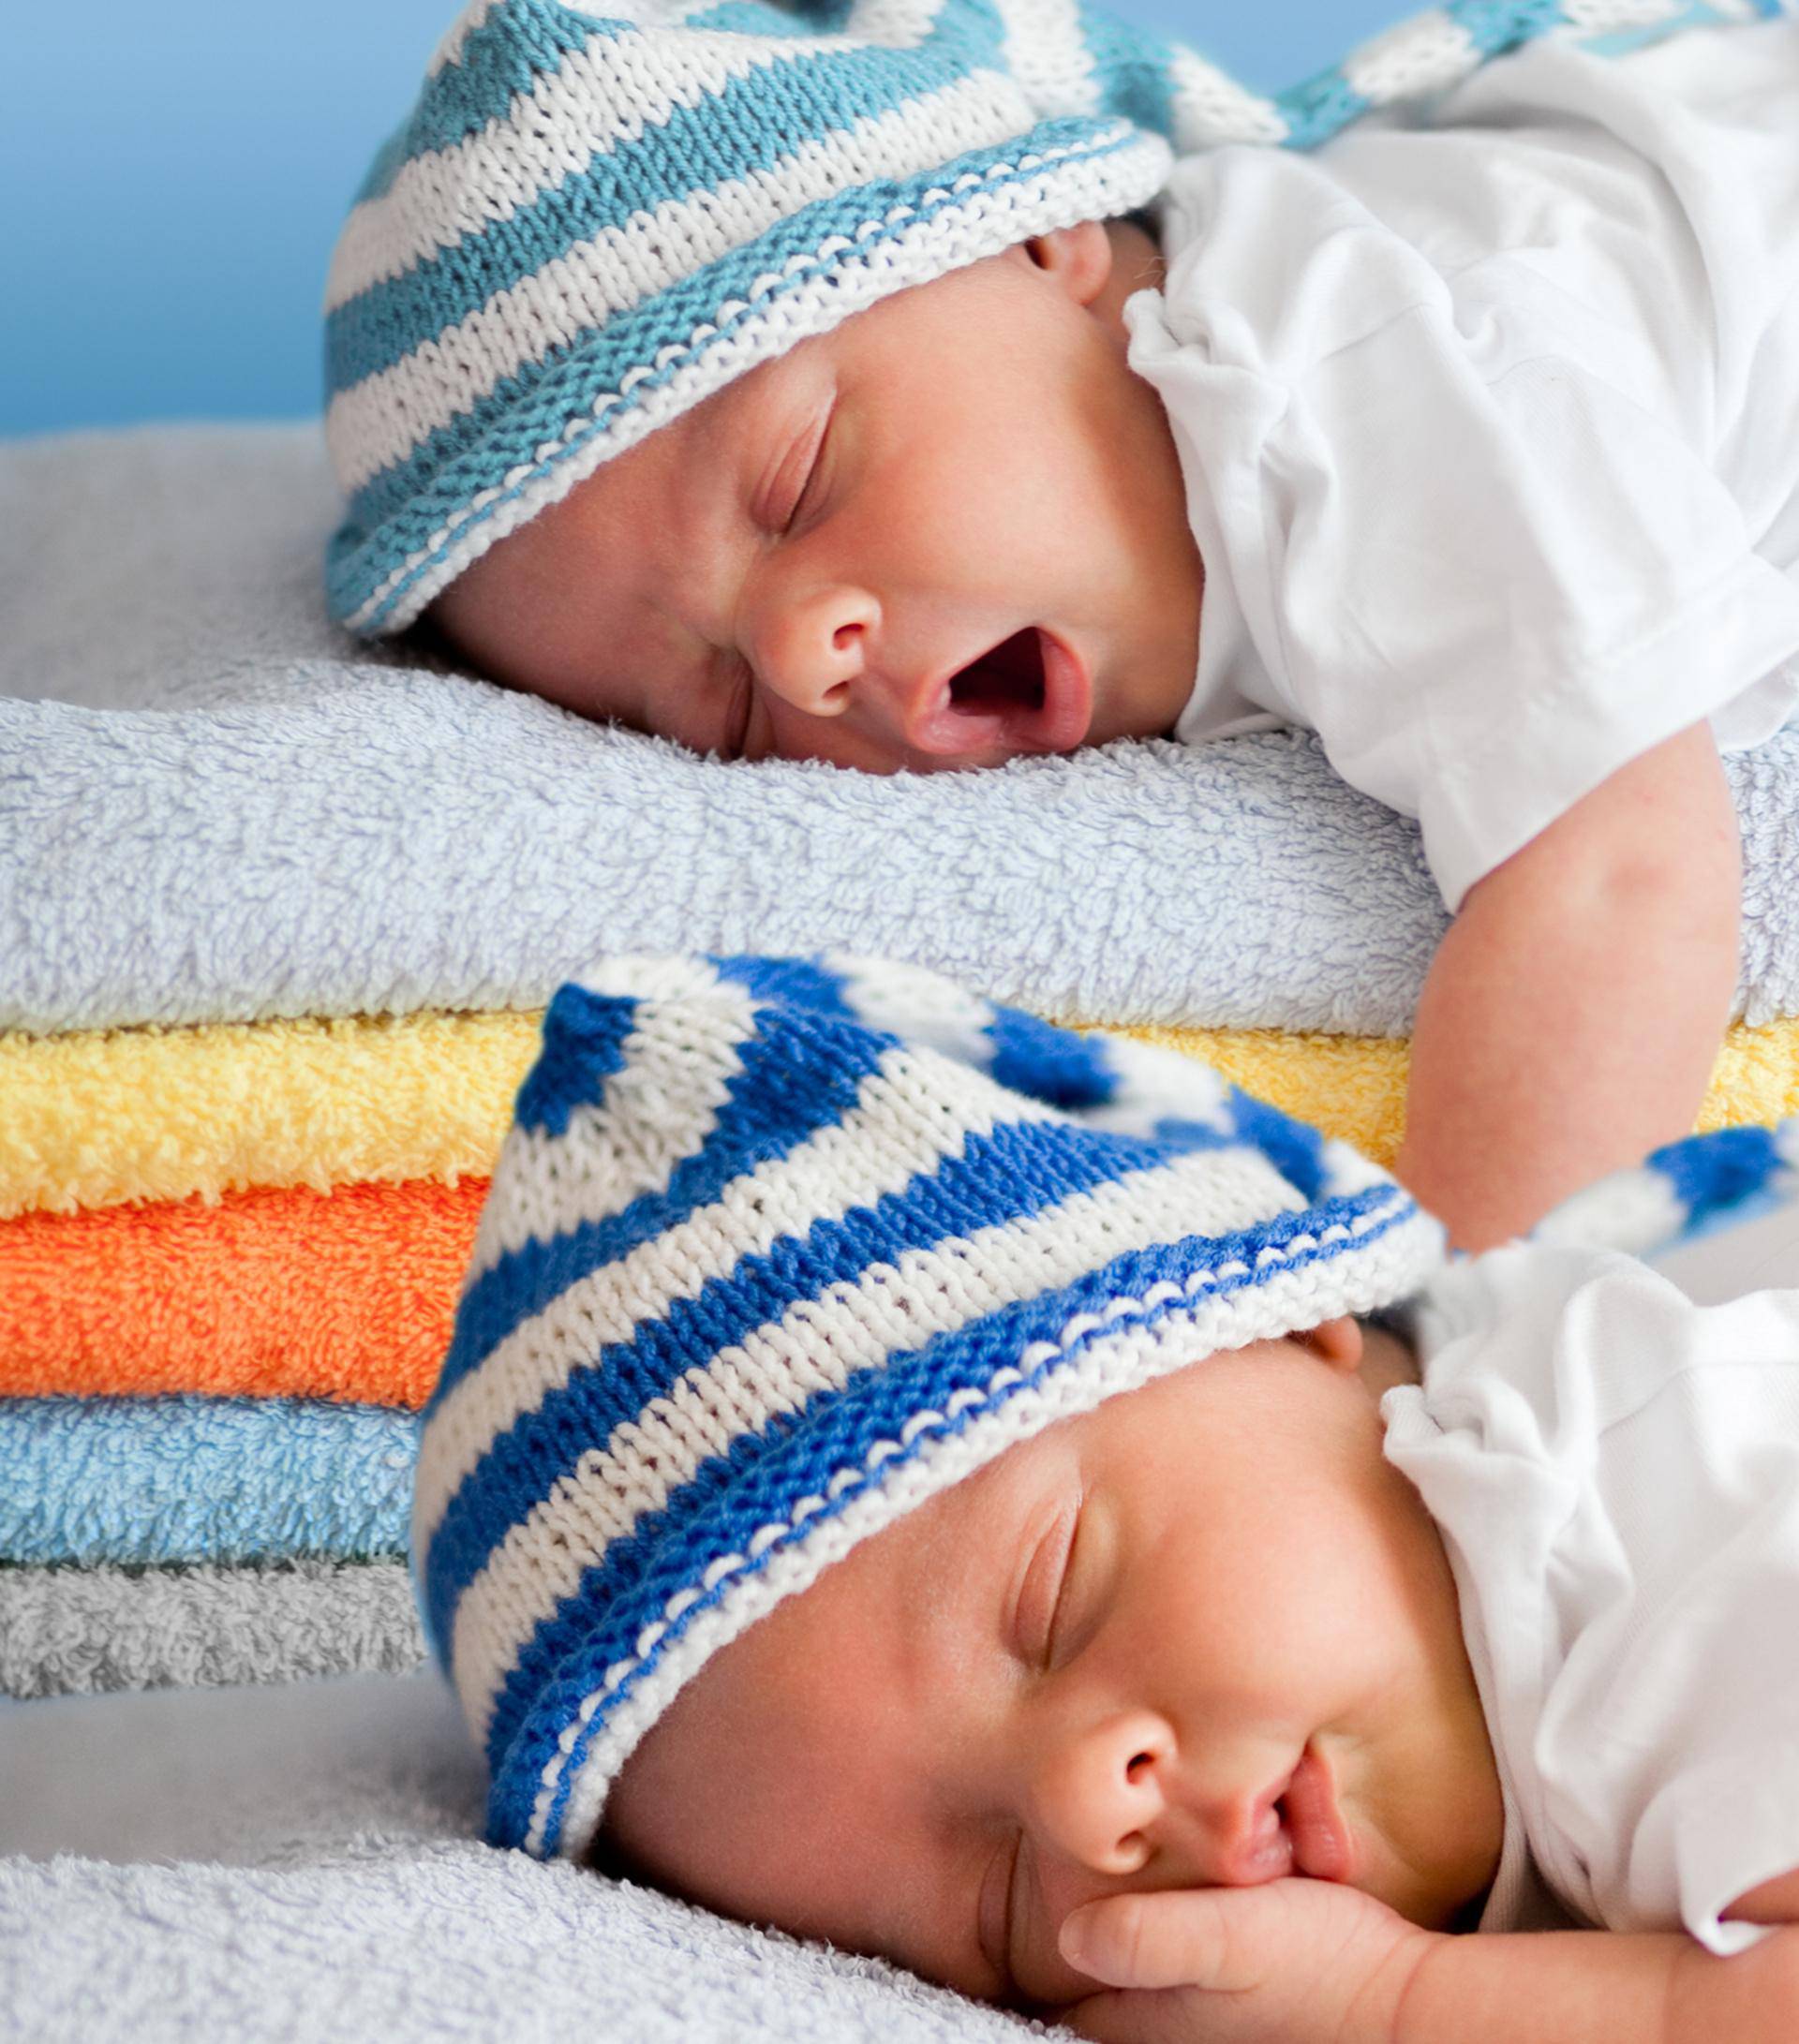 Koliko sati spavanja je zapravo potrebno tek rođenim bebama?